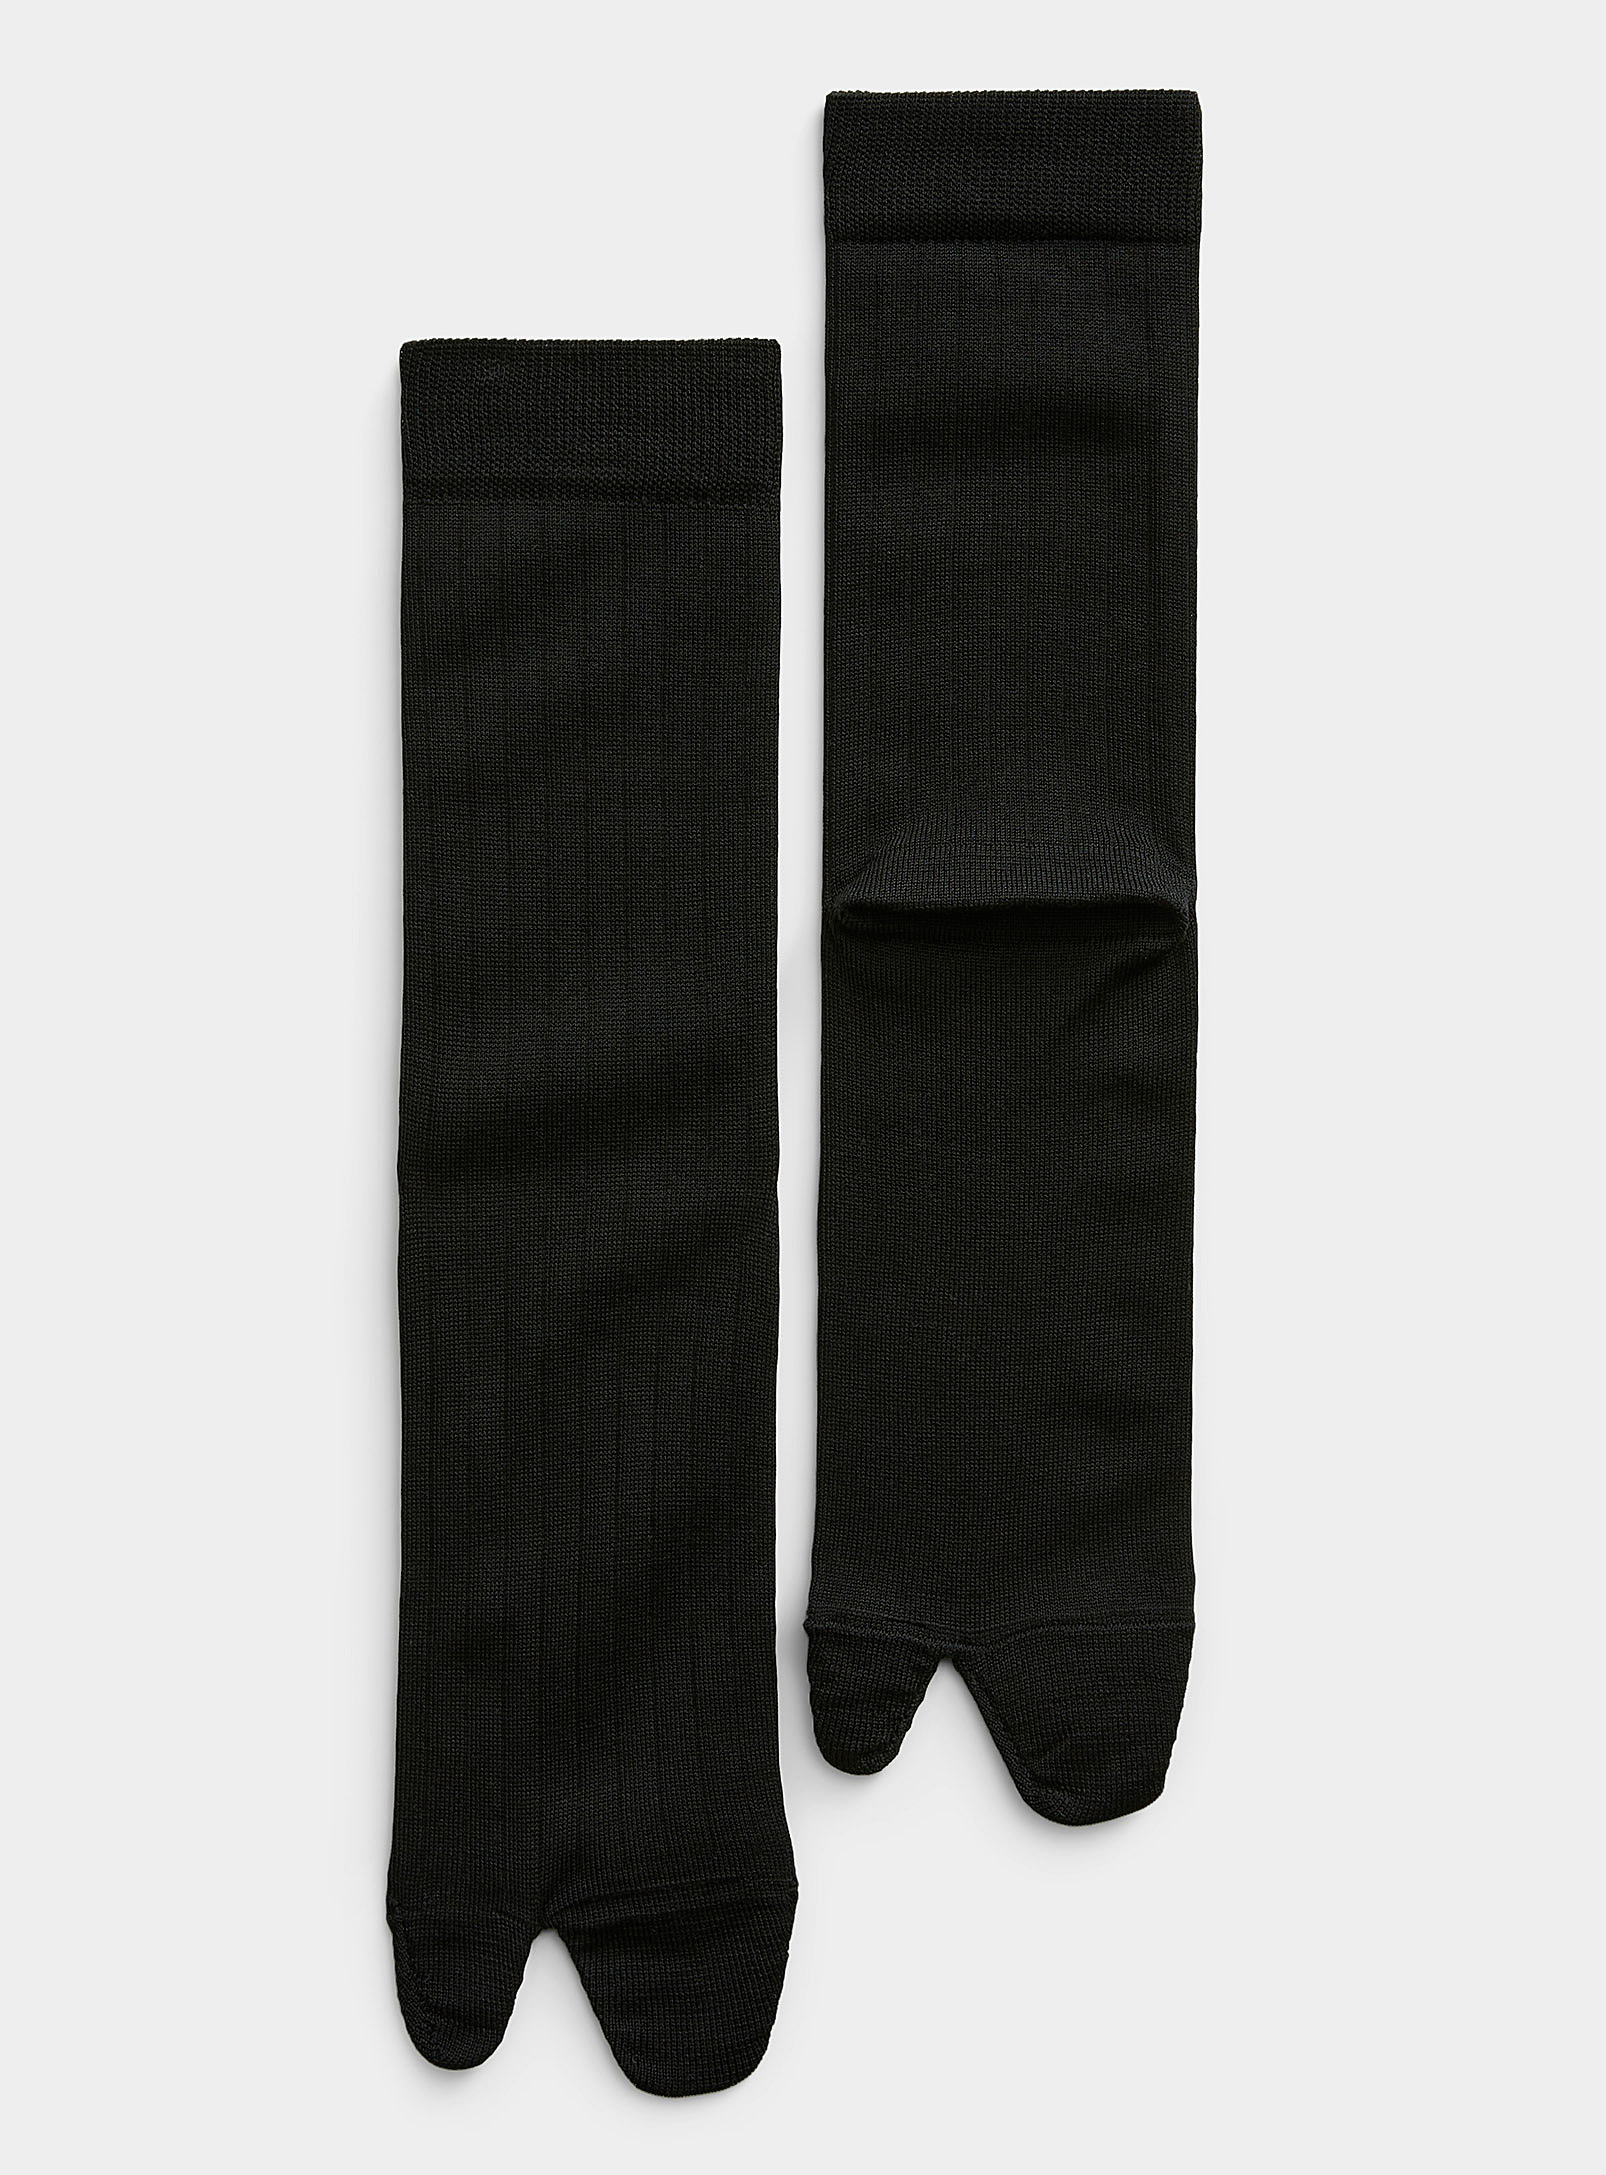 Maison Margiela Black Bootleg Socks